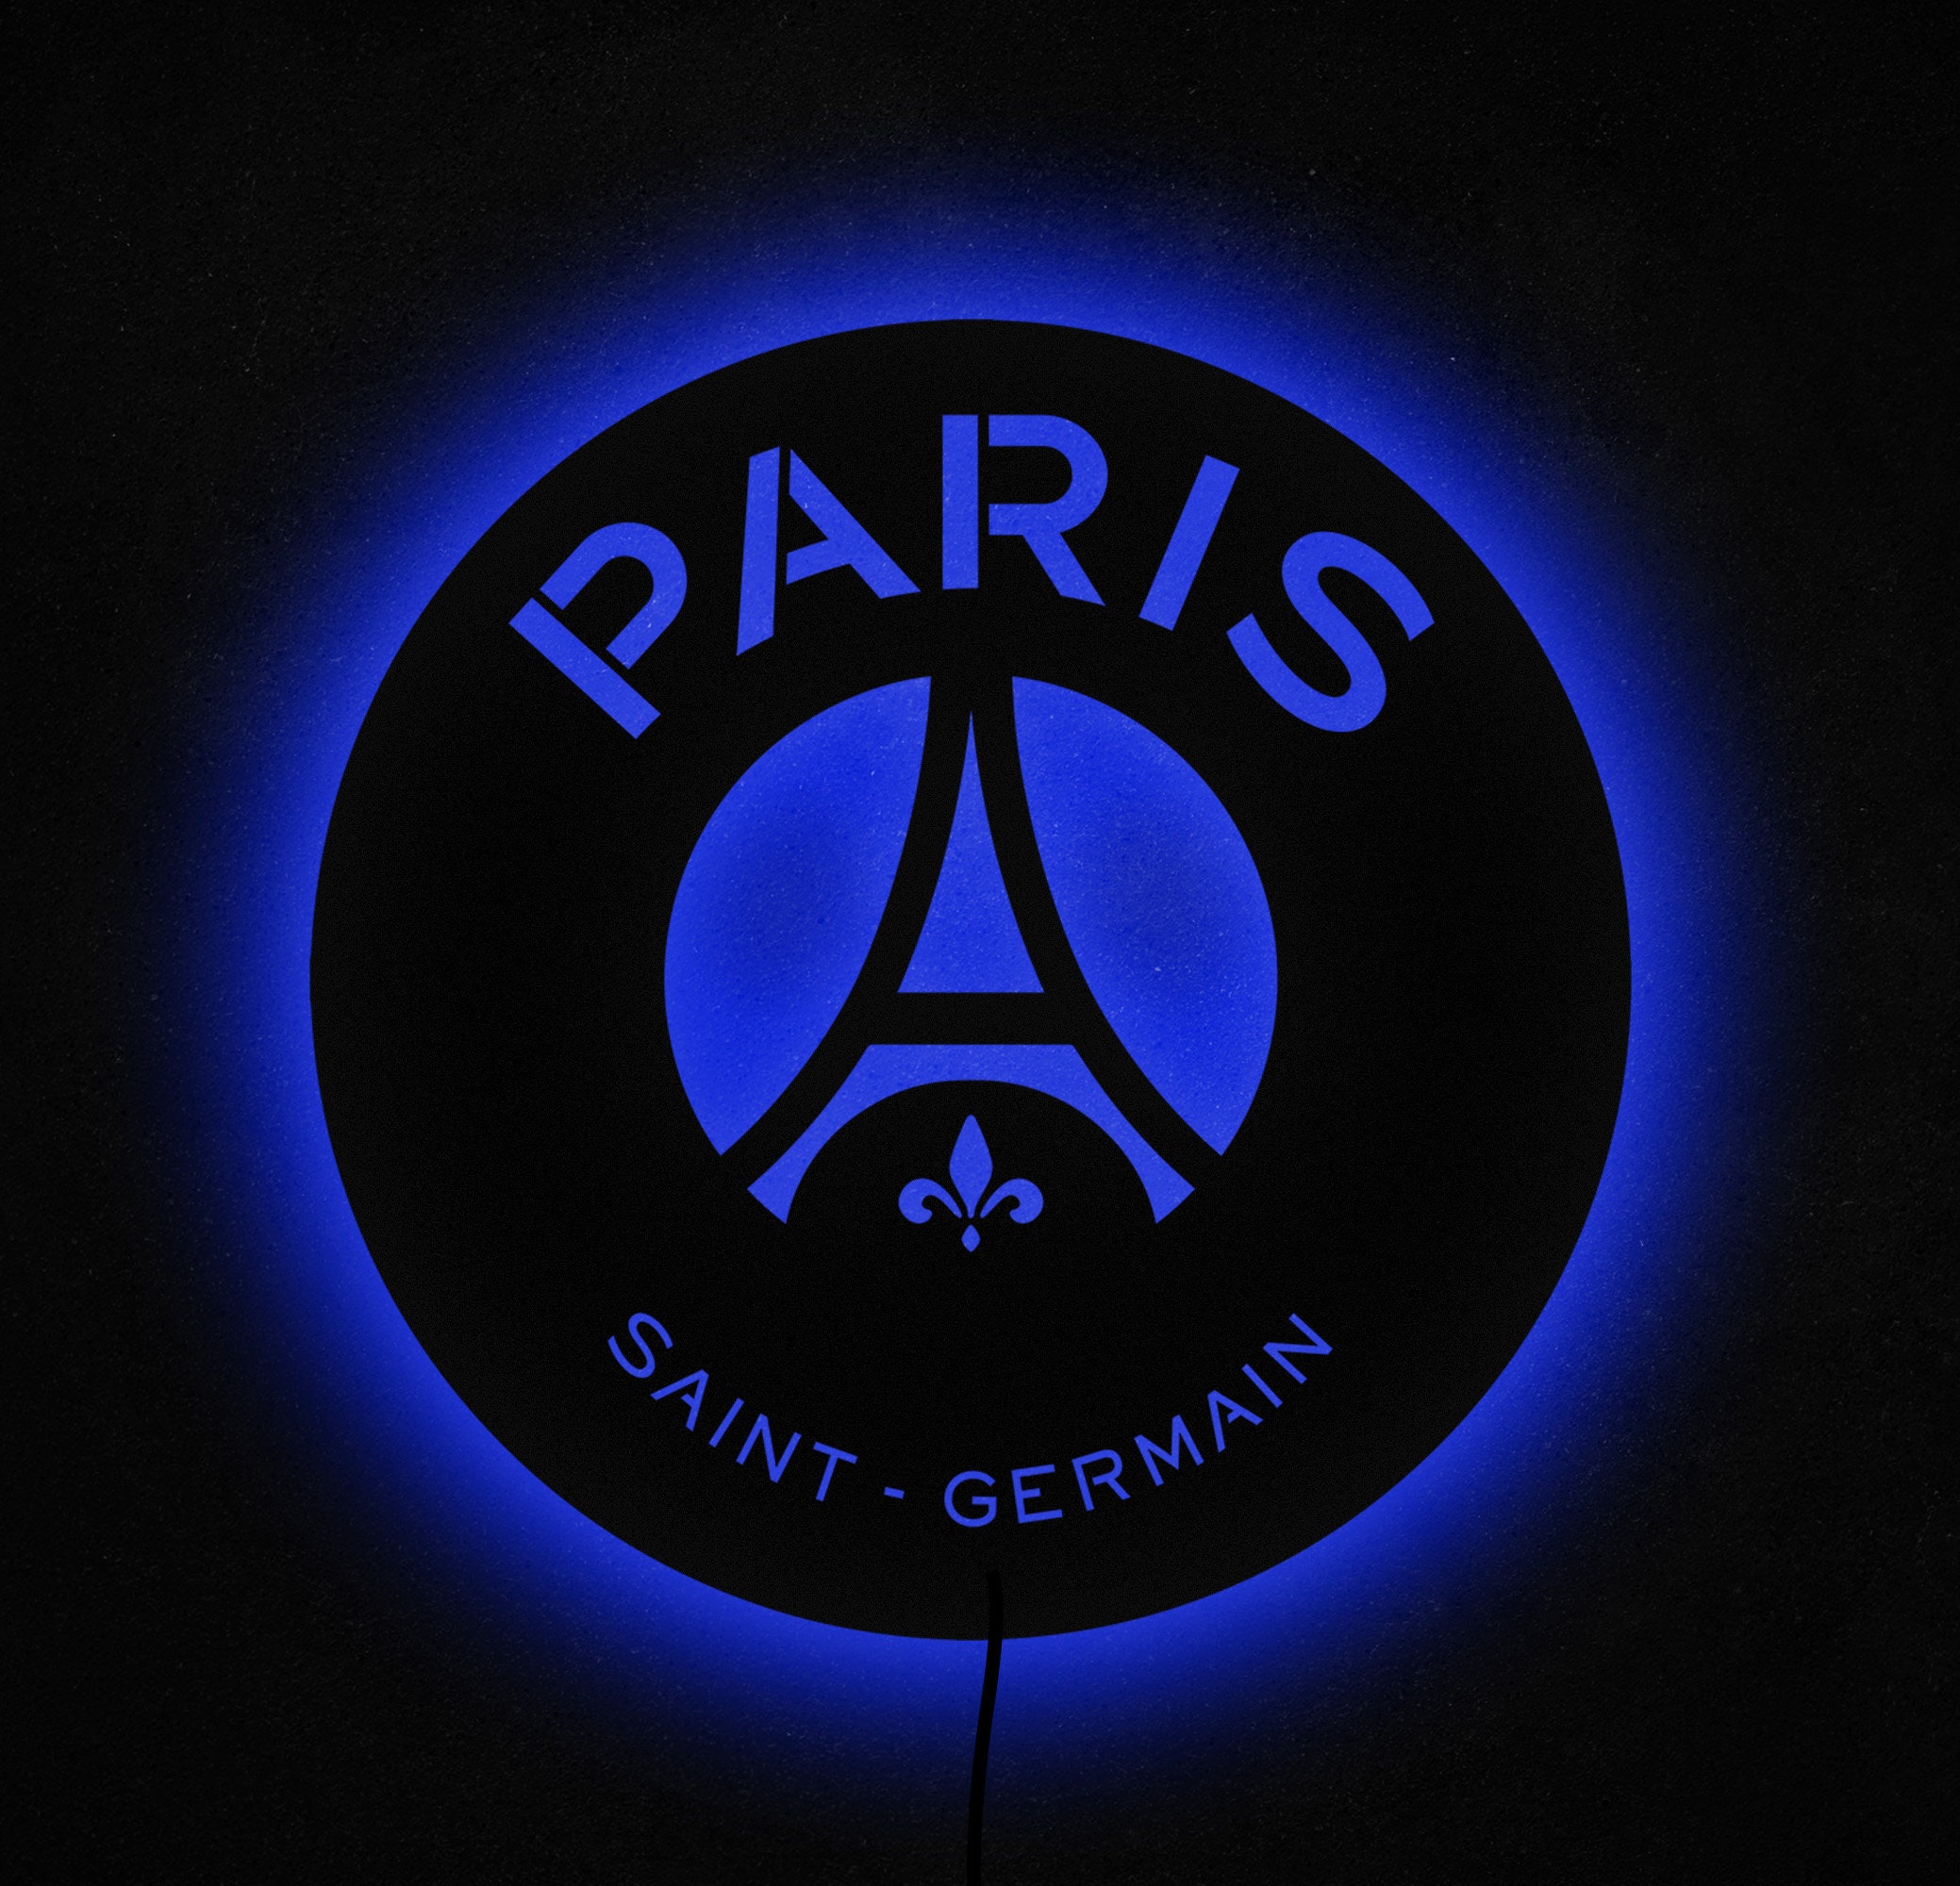 Veilleuse Lumi 3D - 16 Couleurs - PSG - Paris Saint Germain - Voetbal -  Illusion LED 